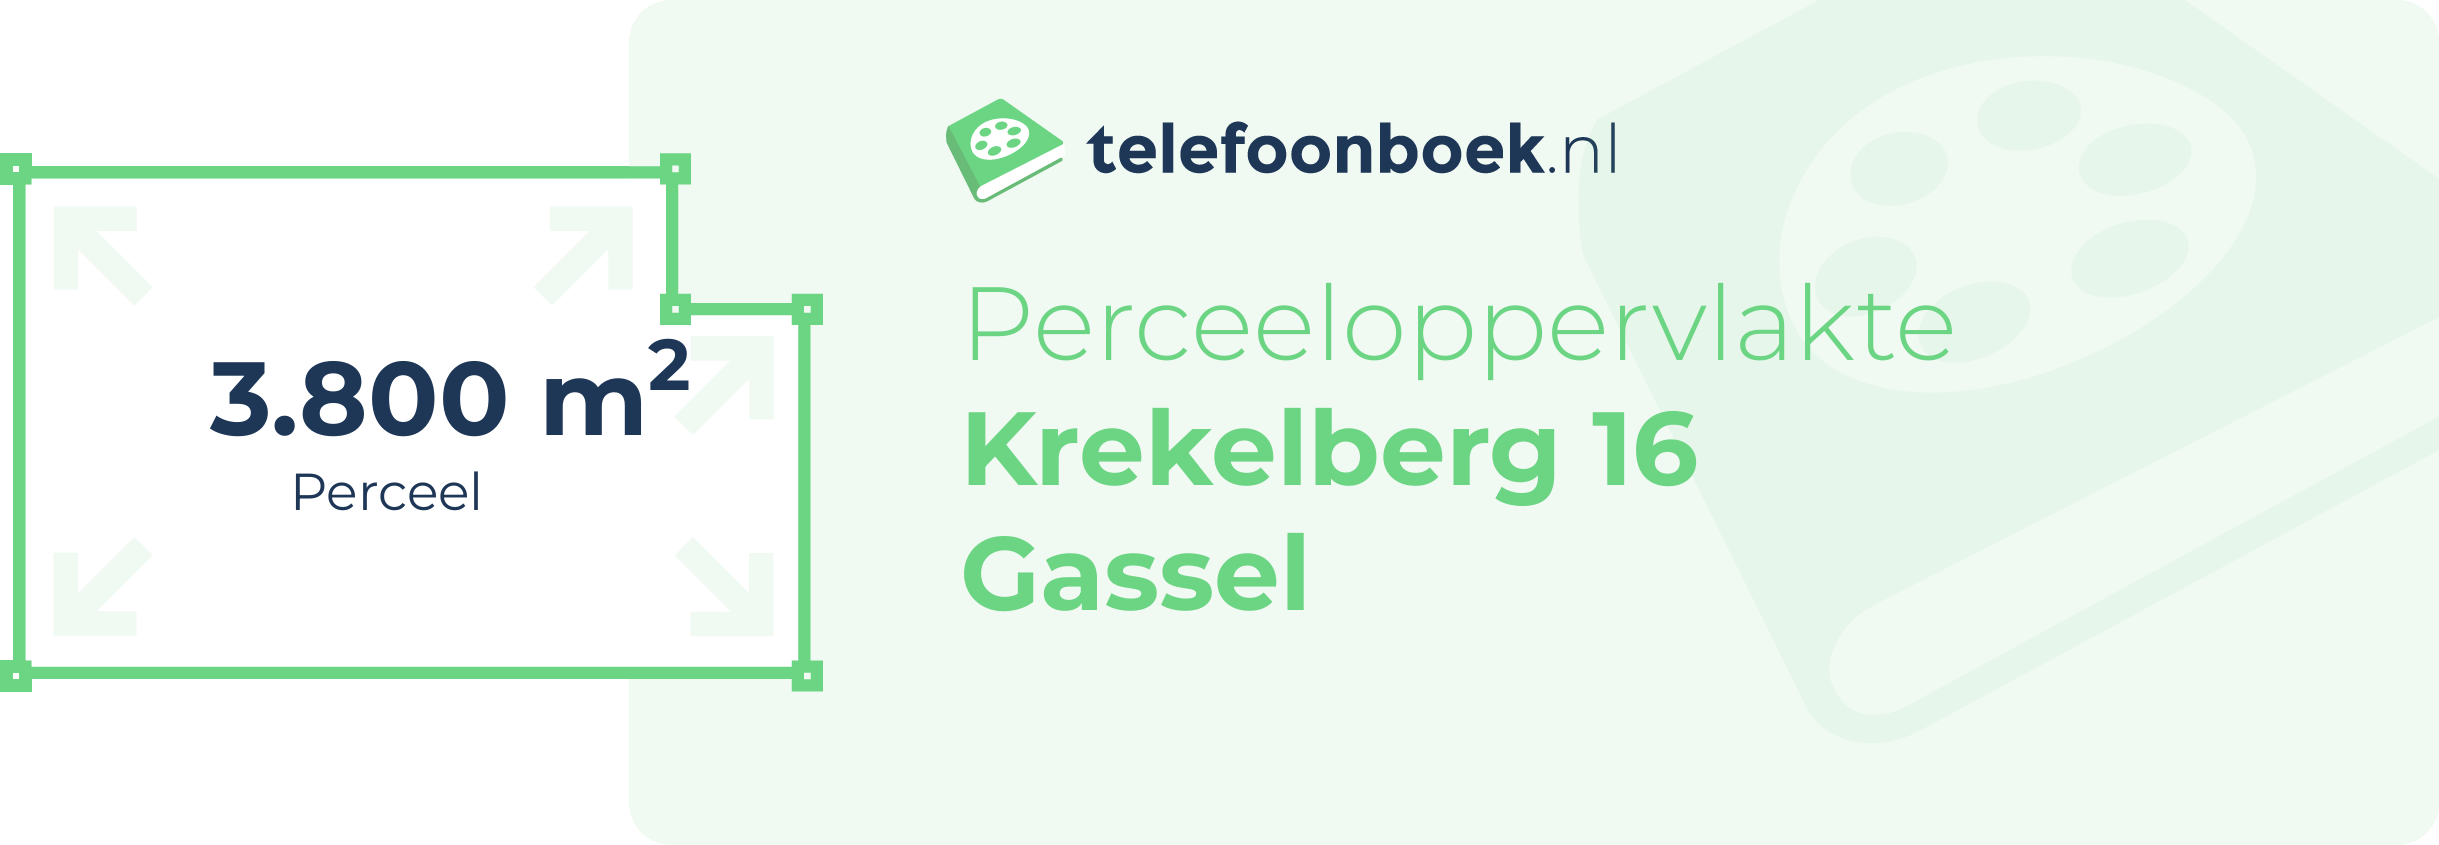 Perceeloppervlakte Krekelberg 16 Gassel